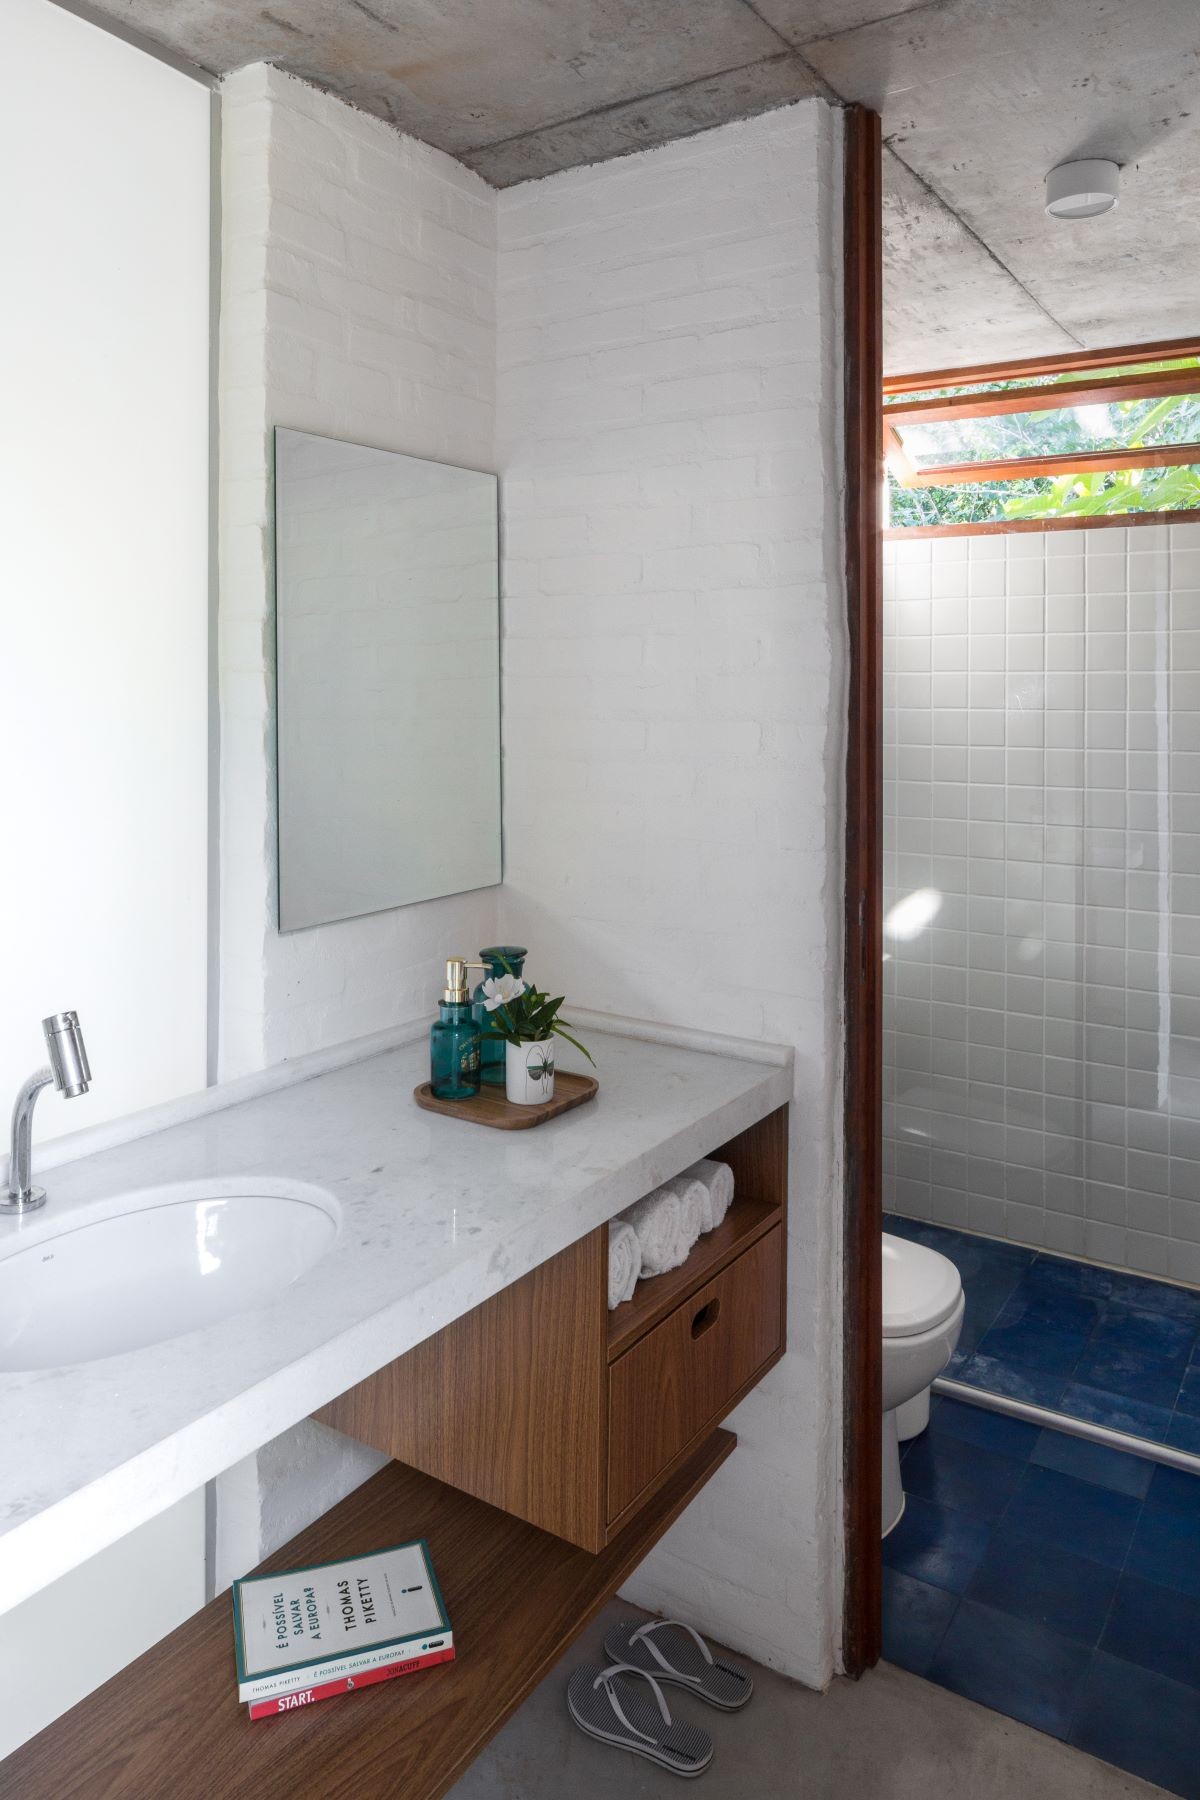 BANHEIRO | O banheiro de uso comum fica no andar superior da casa e serve de apoio para as visitar (Foto: Divulgação / André Scarpa)